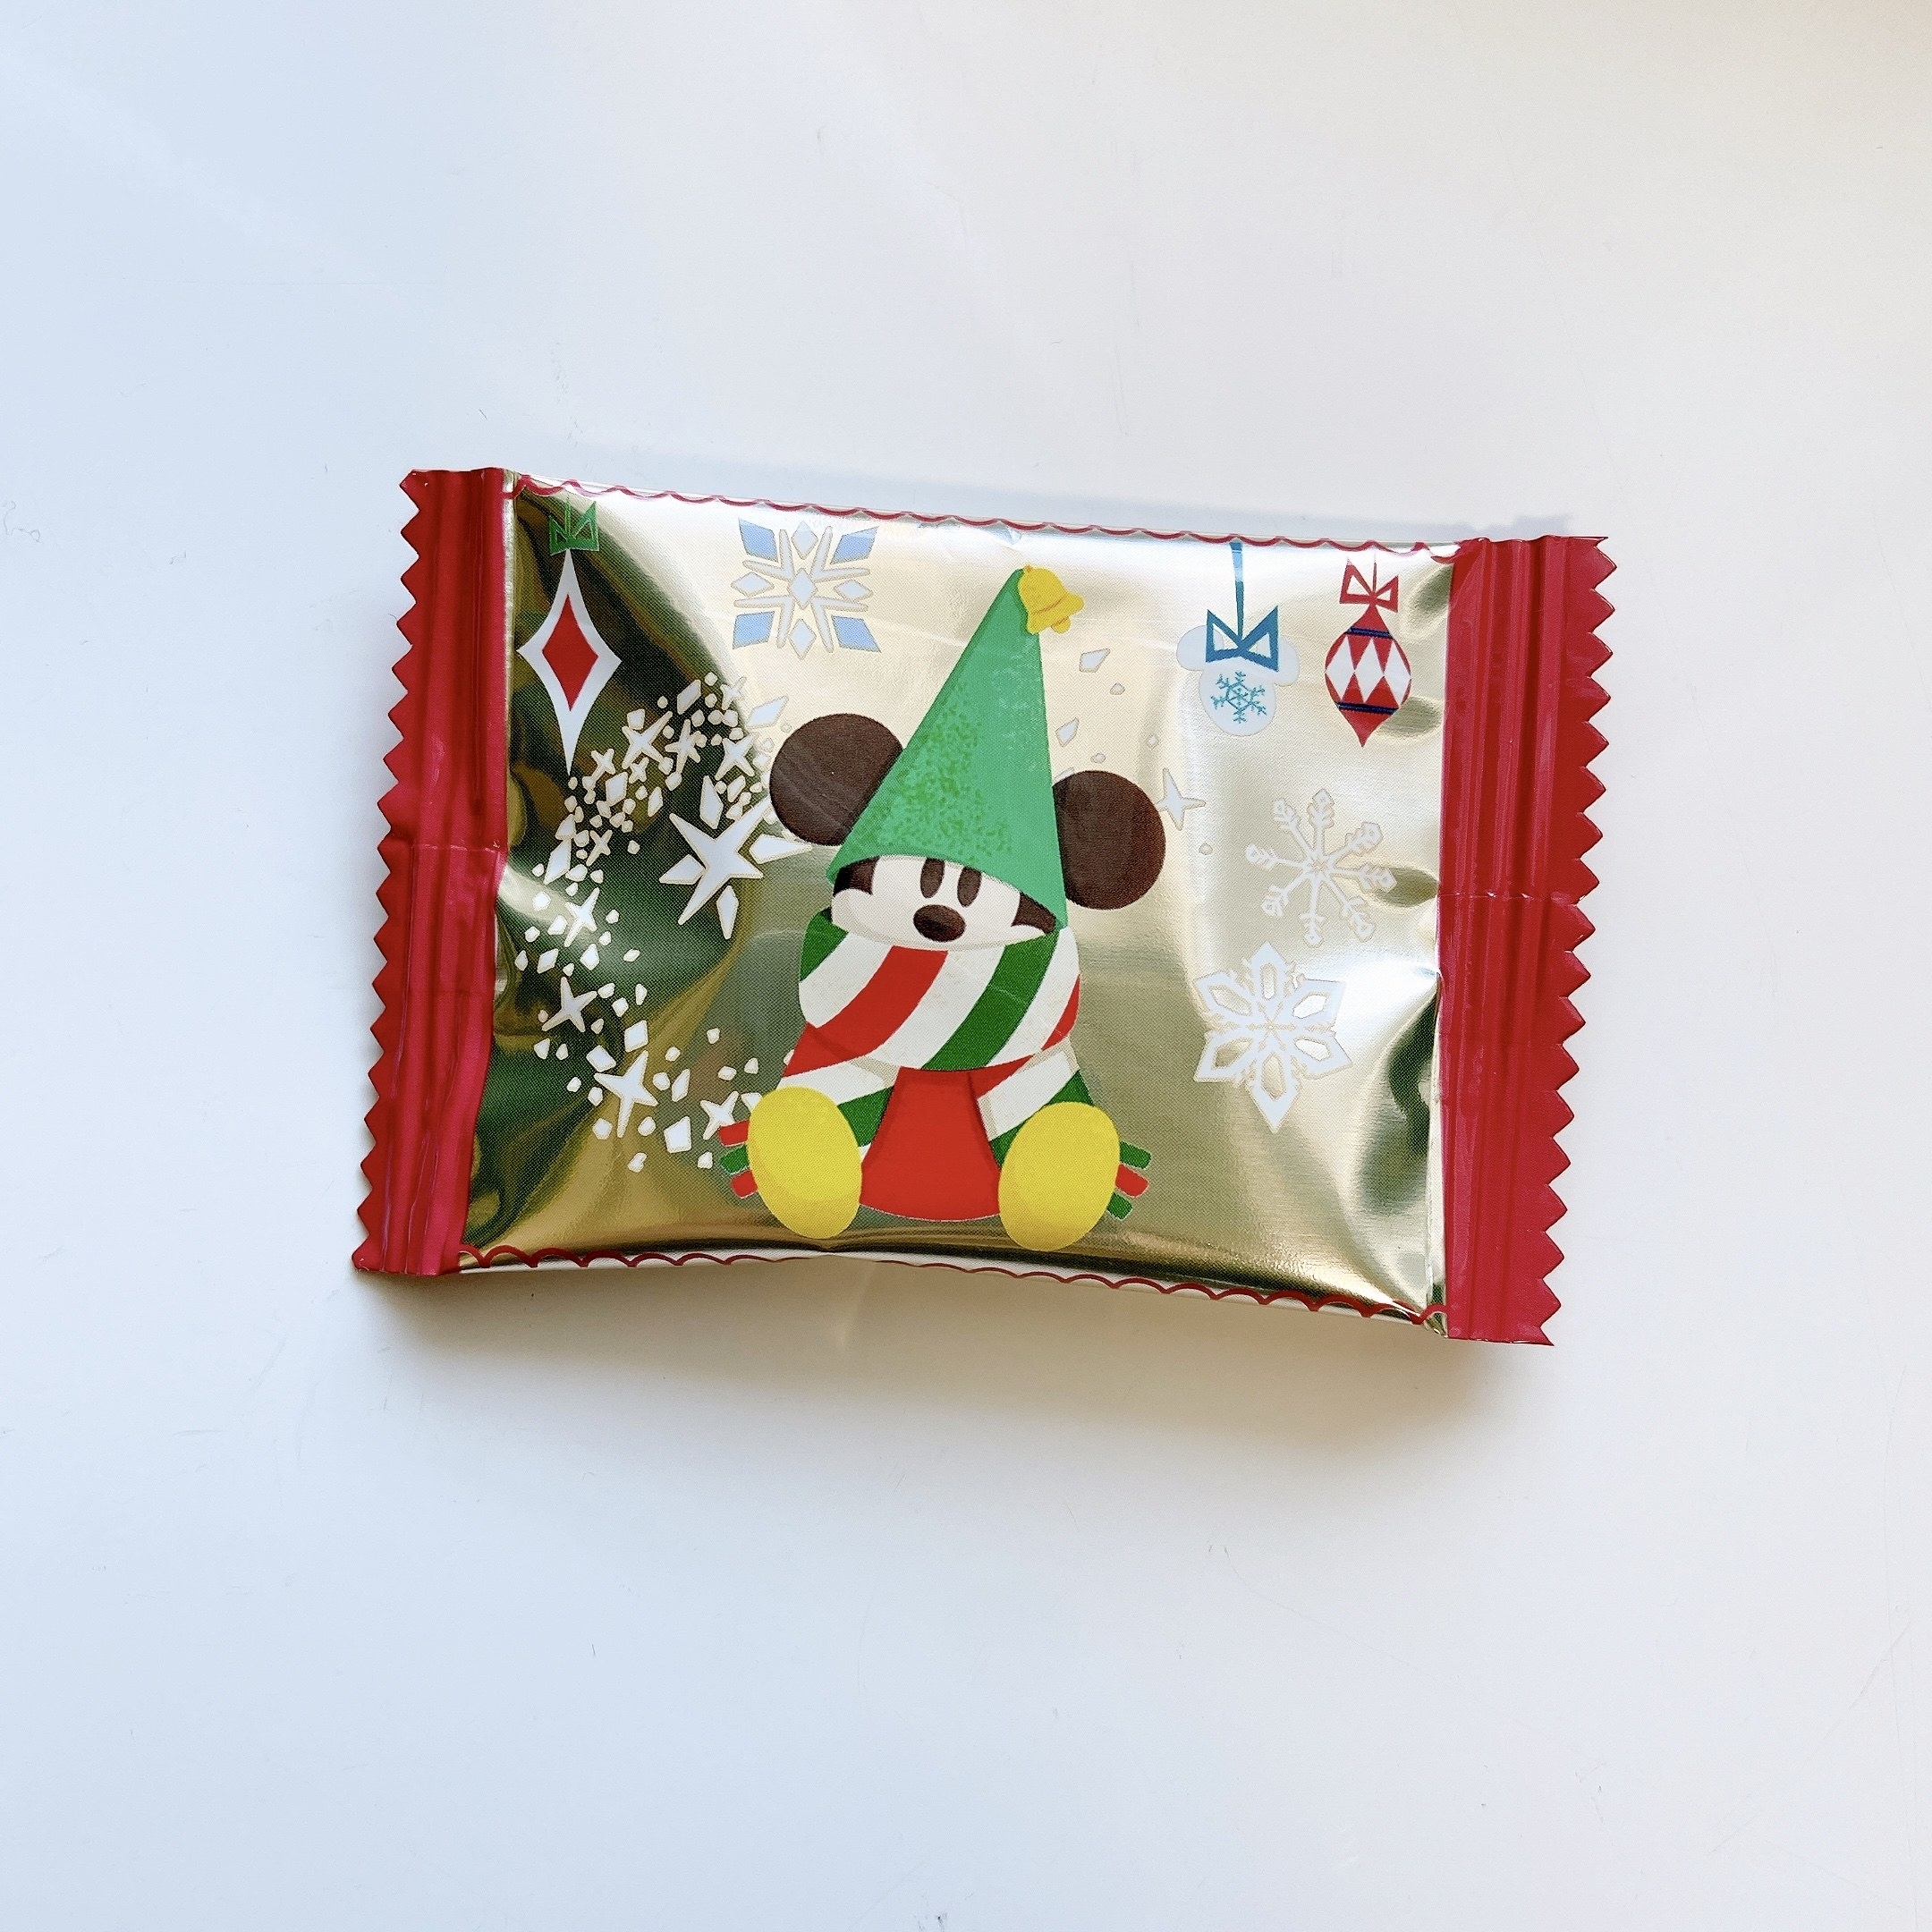 ディズニーランドのクリスマス限定お土産「アソーテッド・チョコレート 缶」